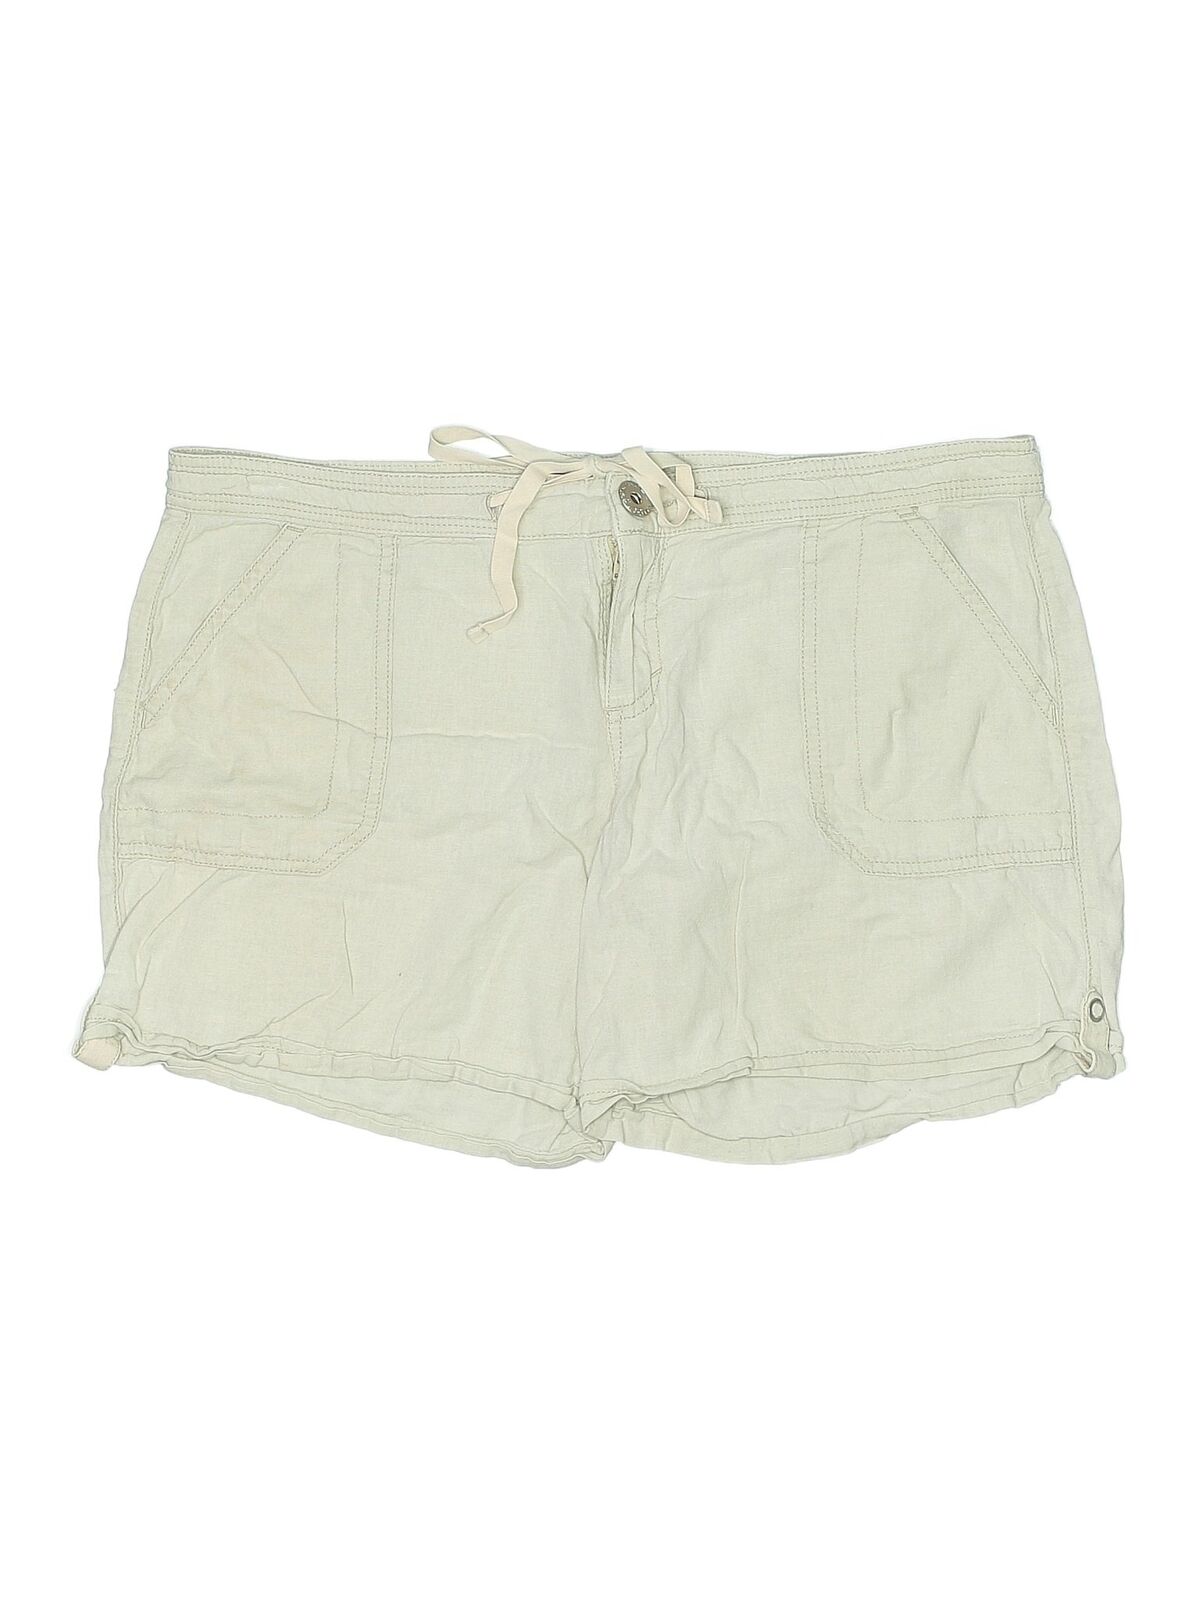 Bandolino Women Ivory Shorts 4 - image 1